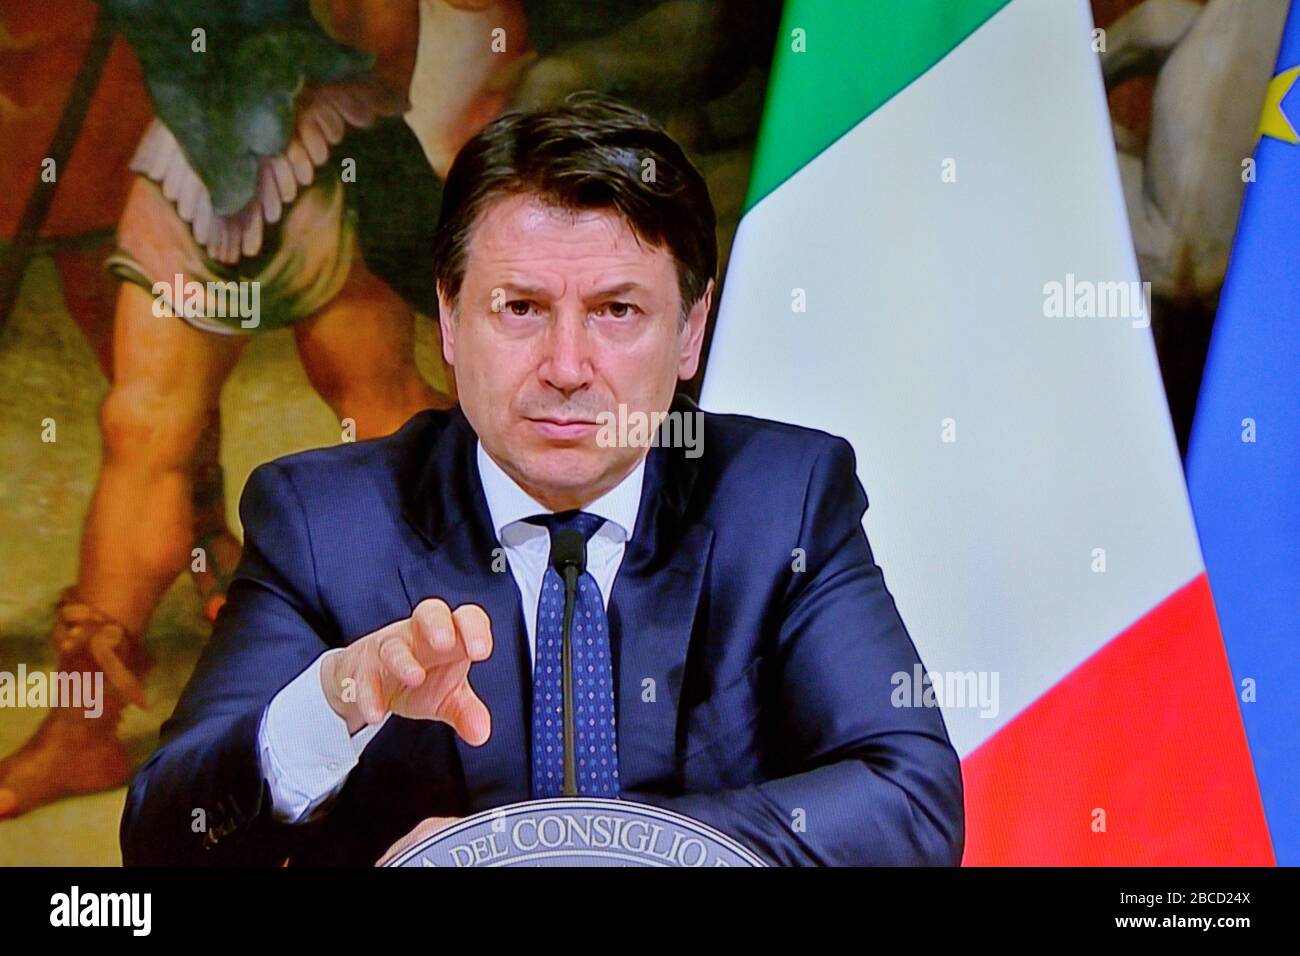 La conférence de presse du Premier ministre Giuseppe Conte a corona virus covid-19 le 24 mars 2020 - Rome Italie Banque D'Images